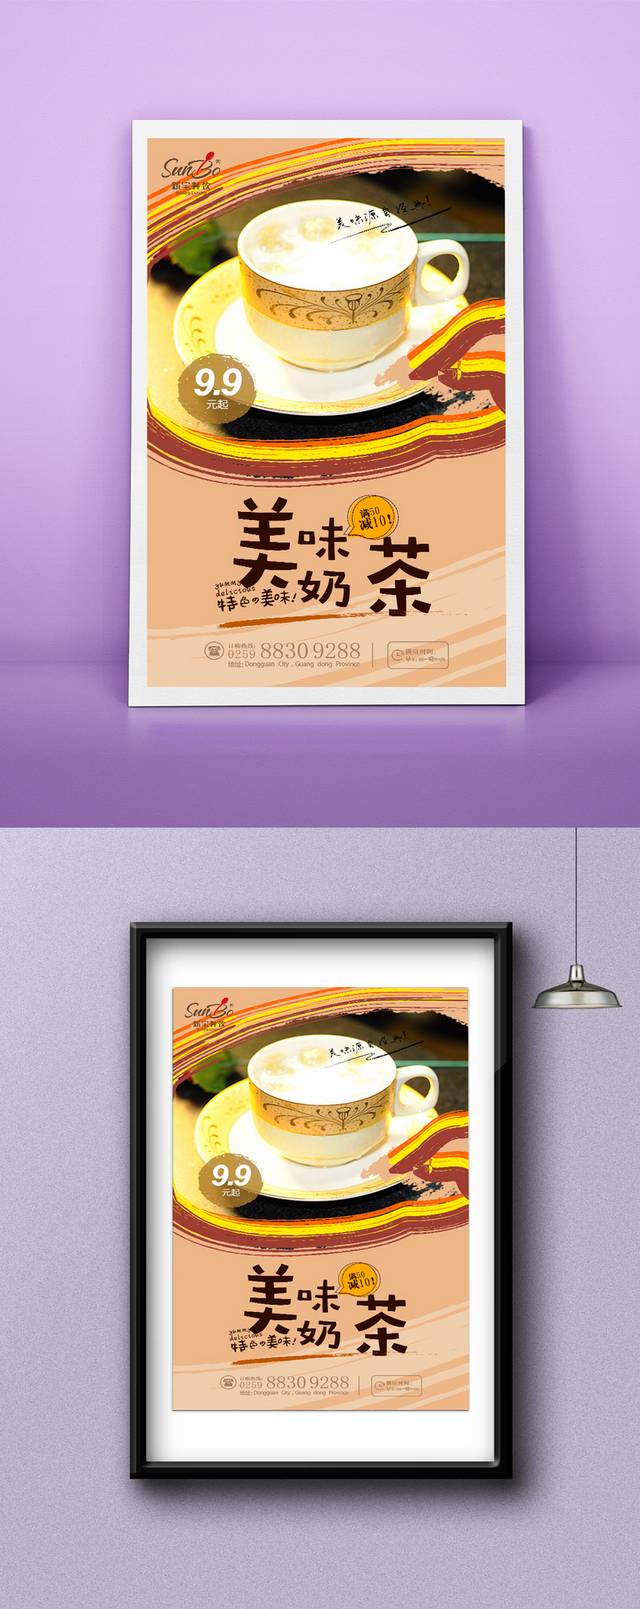 精美奶茶海报宣传设计